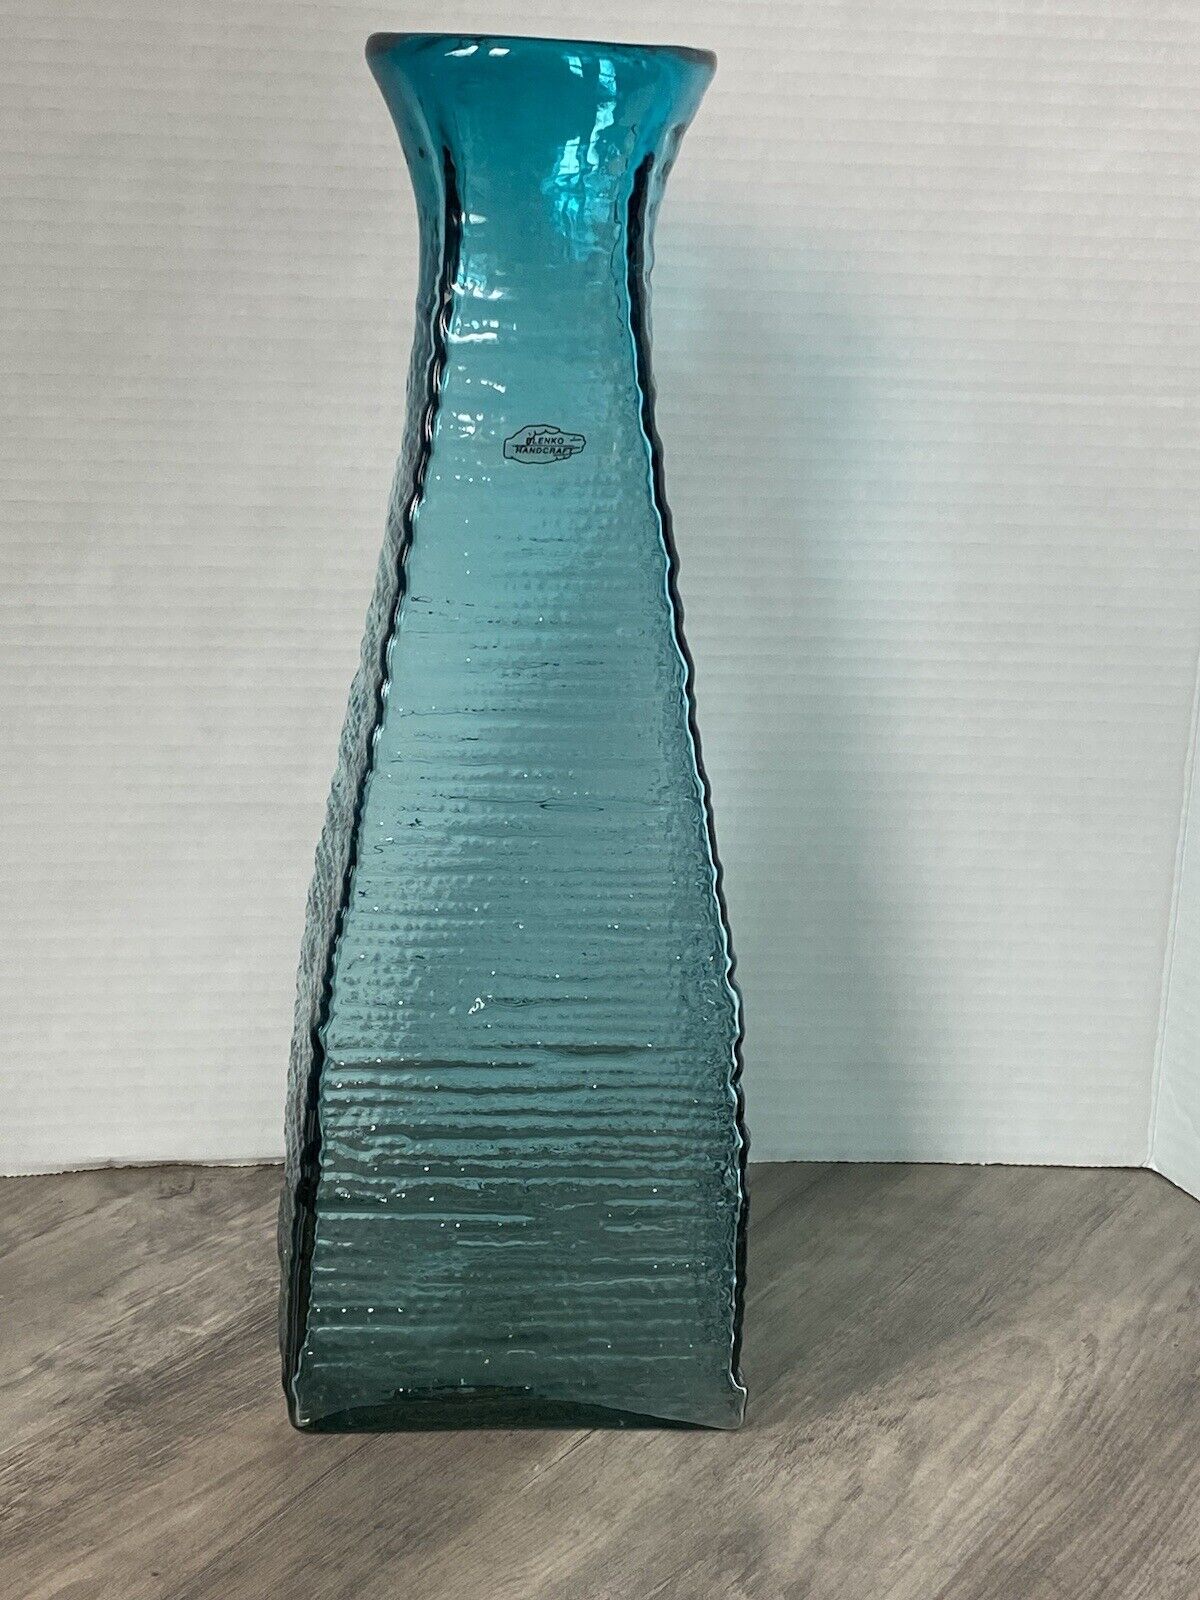 Blenko 2134 Strata Vase Turquoise Some Flaws Please READ Description/Photos